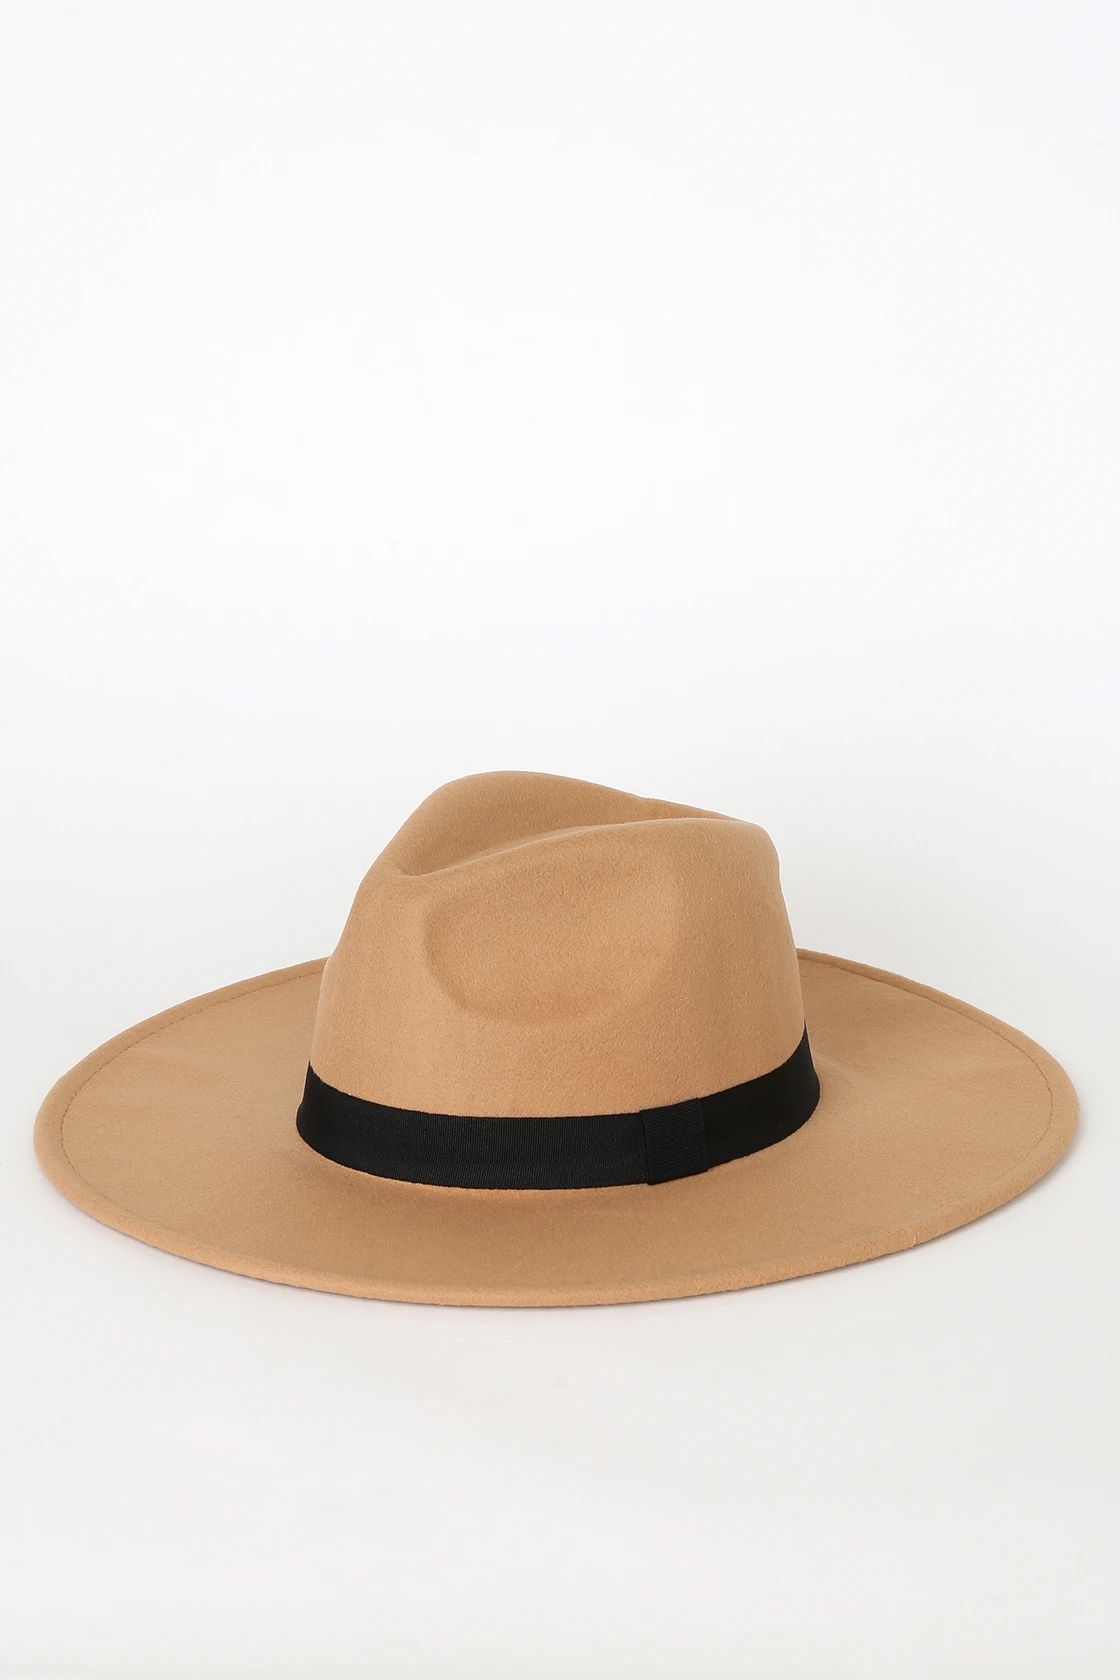 Got a Feeling Tan Fedora Hat | Lulus (US)